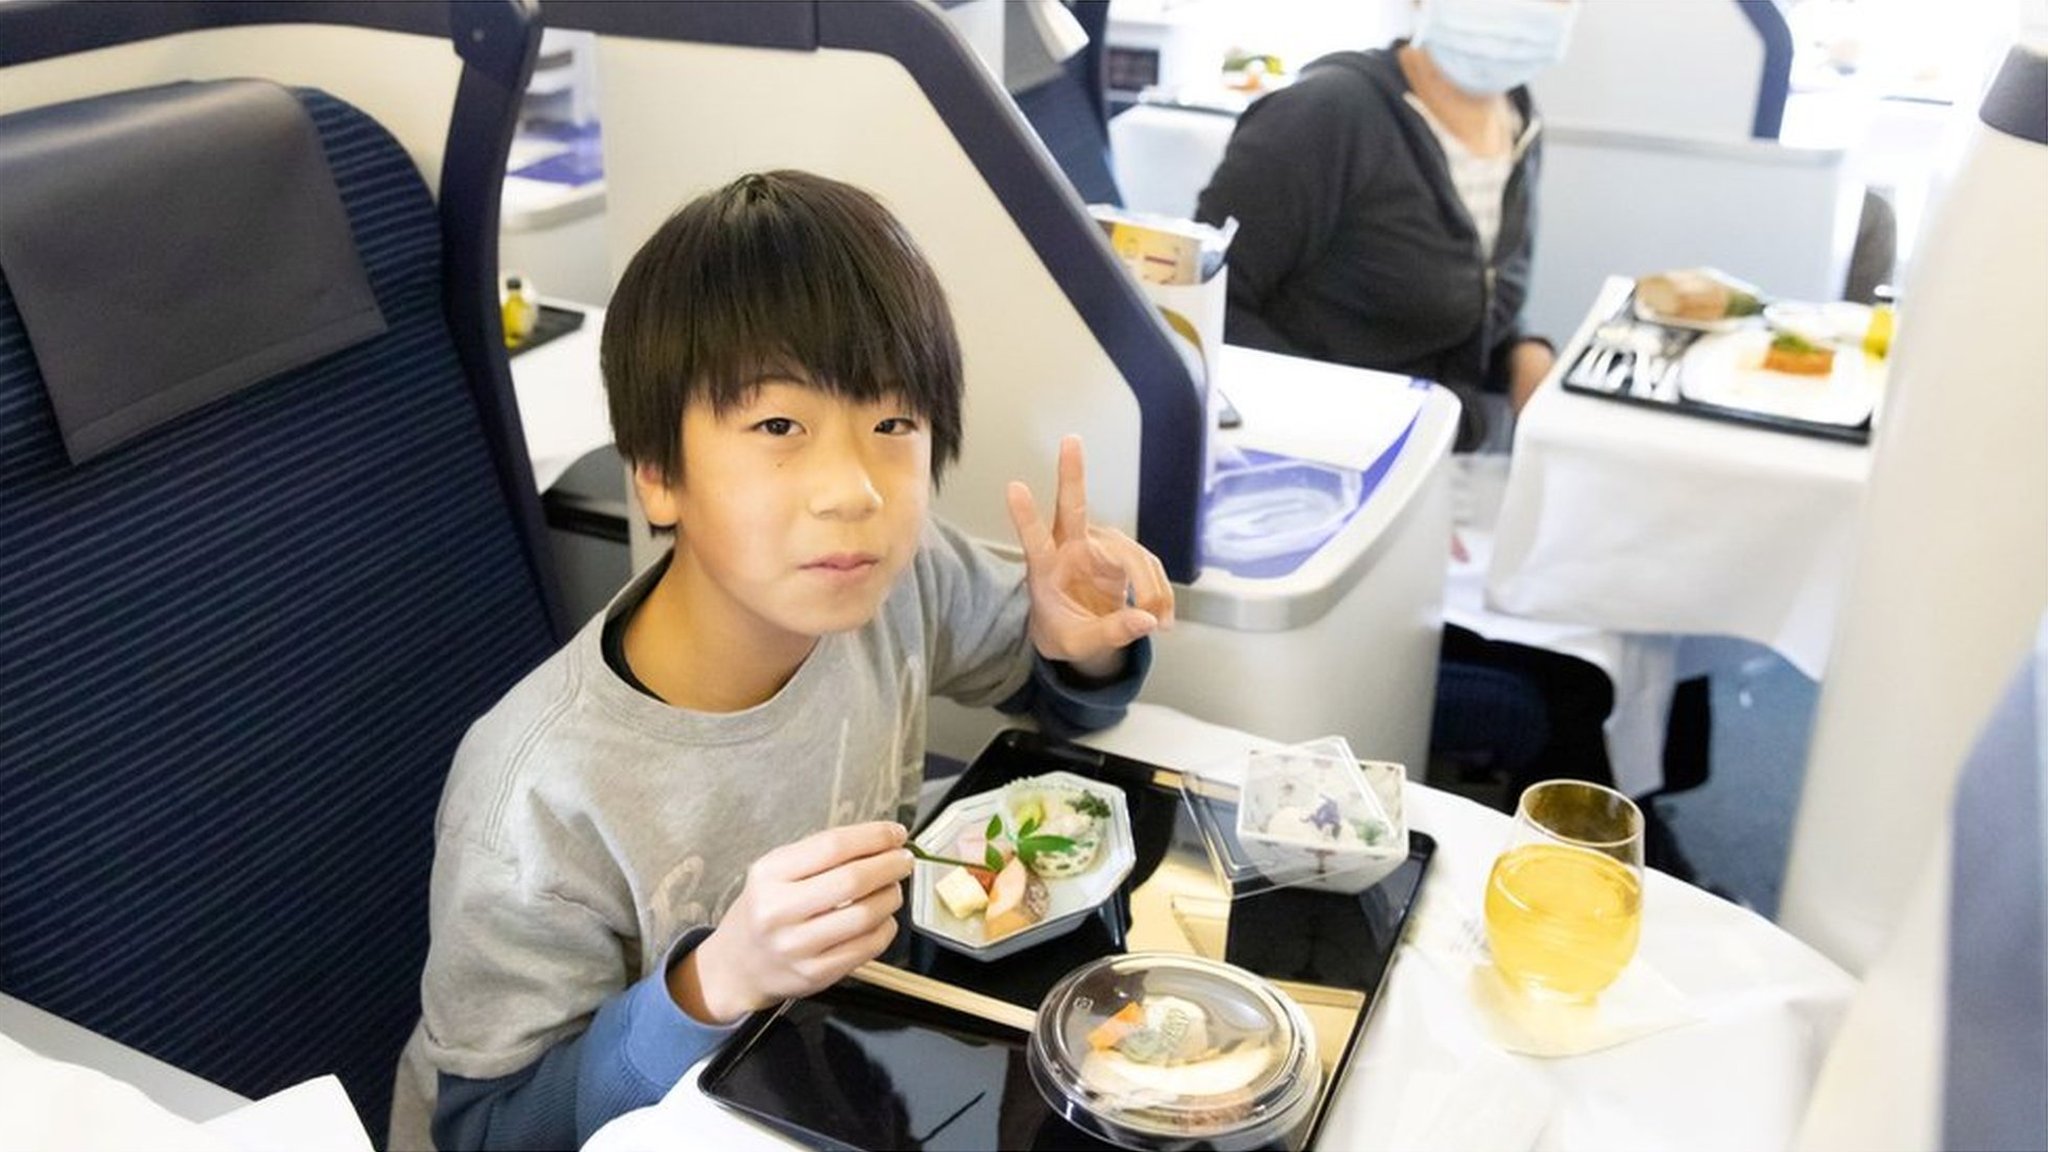 全日空の「飛行機レストラン」が人気 ファーストクラスが6万円 - BBCニュース